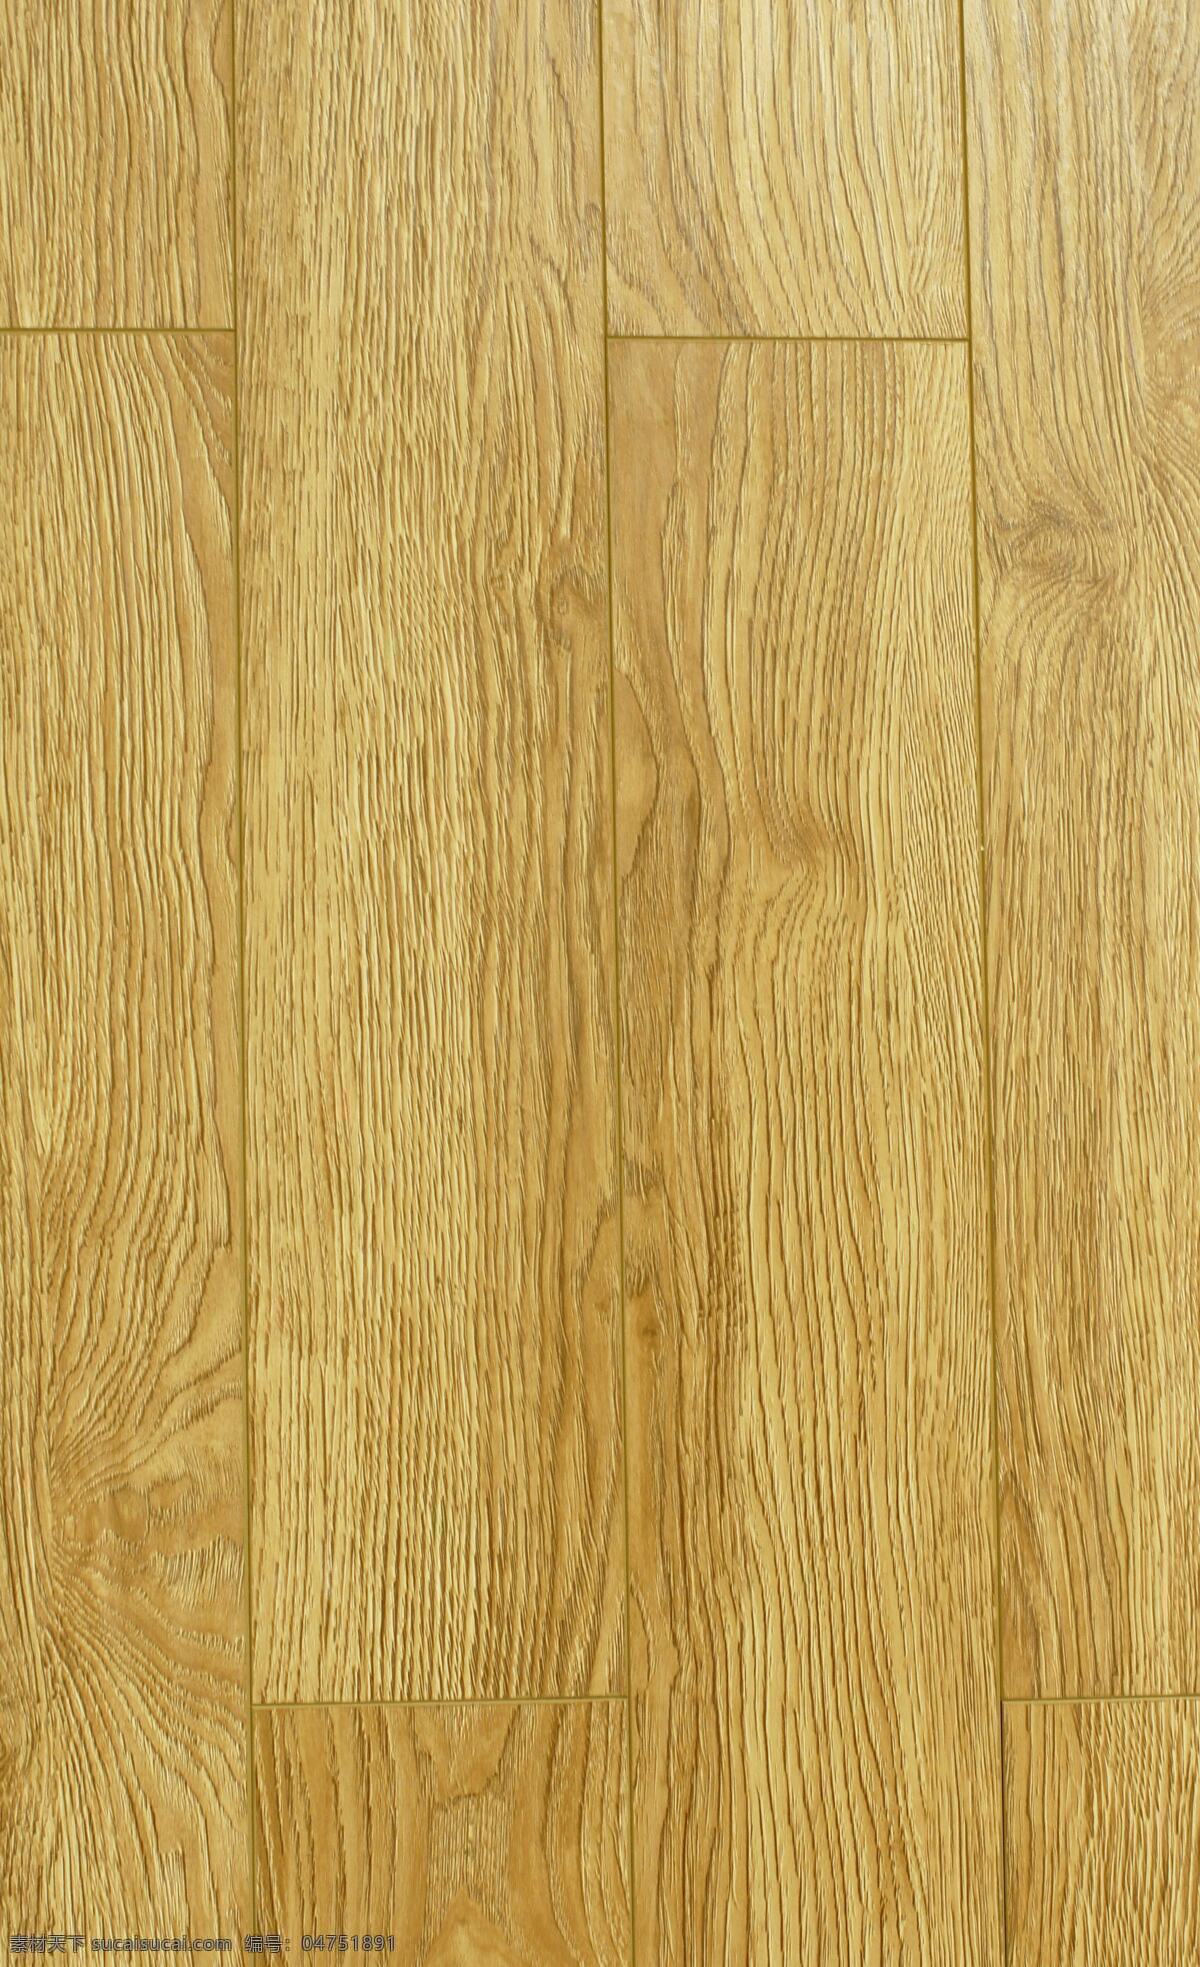 波西 米亚 橡木 地板 实木地板 地板贴图 地板材质 家装素材 装修素材 装修装饰 木纹贴图 木纹装饰 木纹图案 生活百科 生活素材